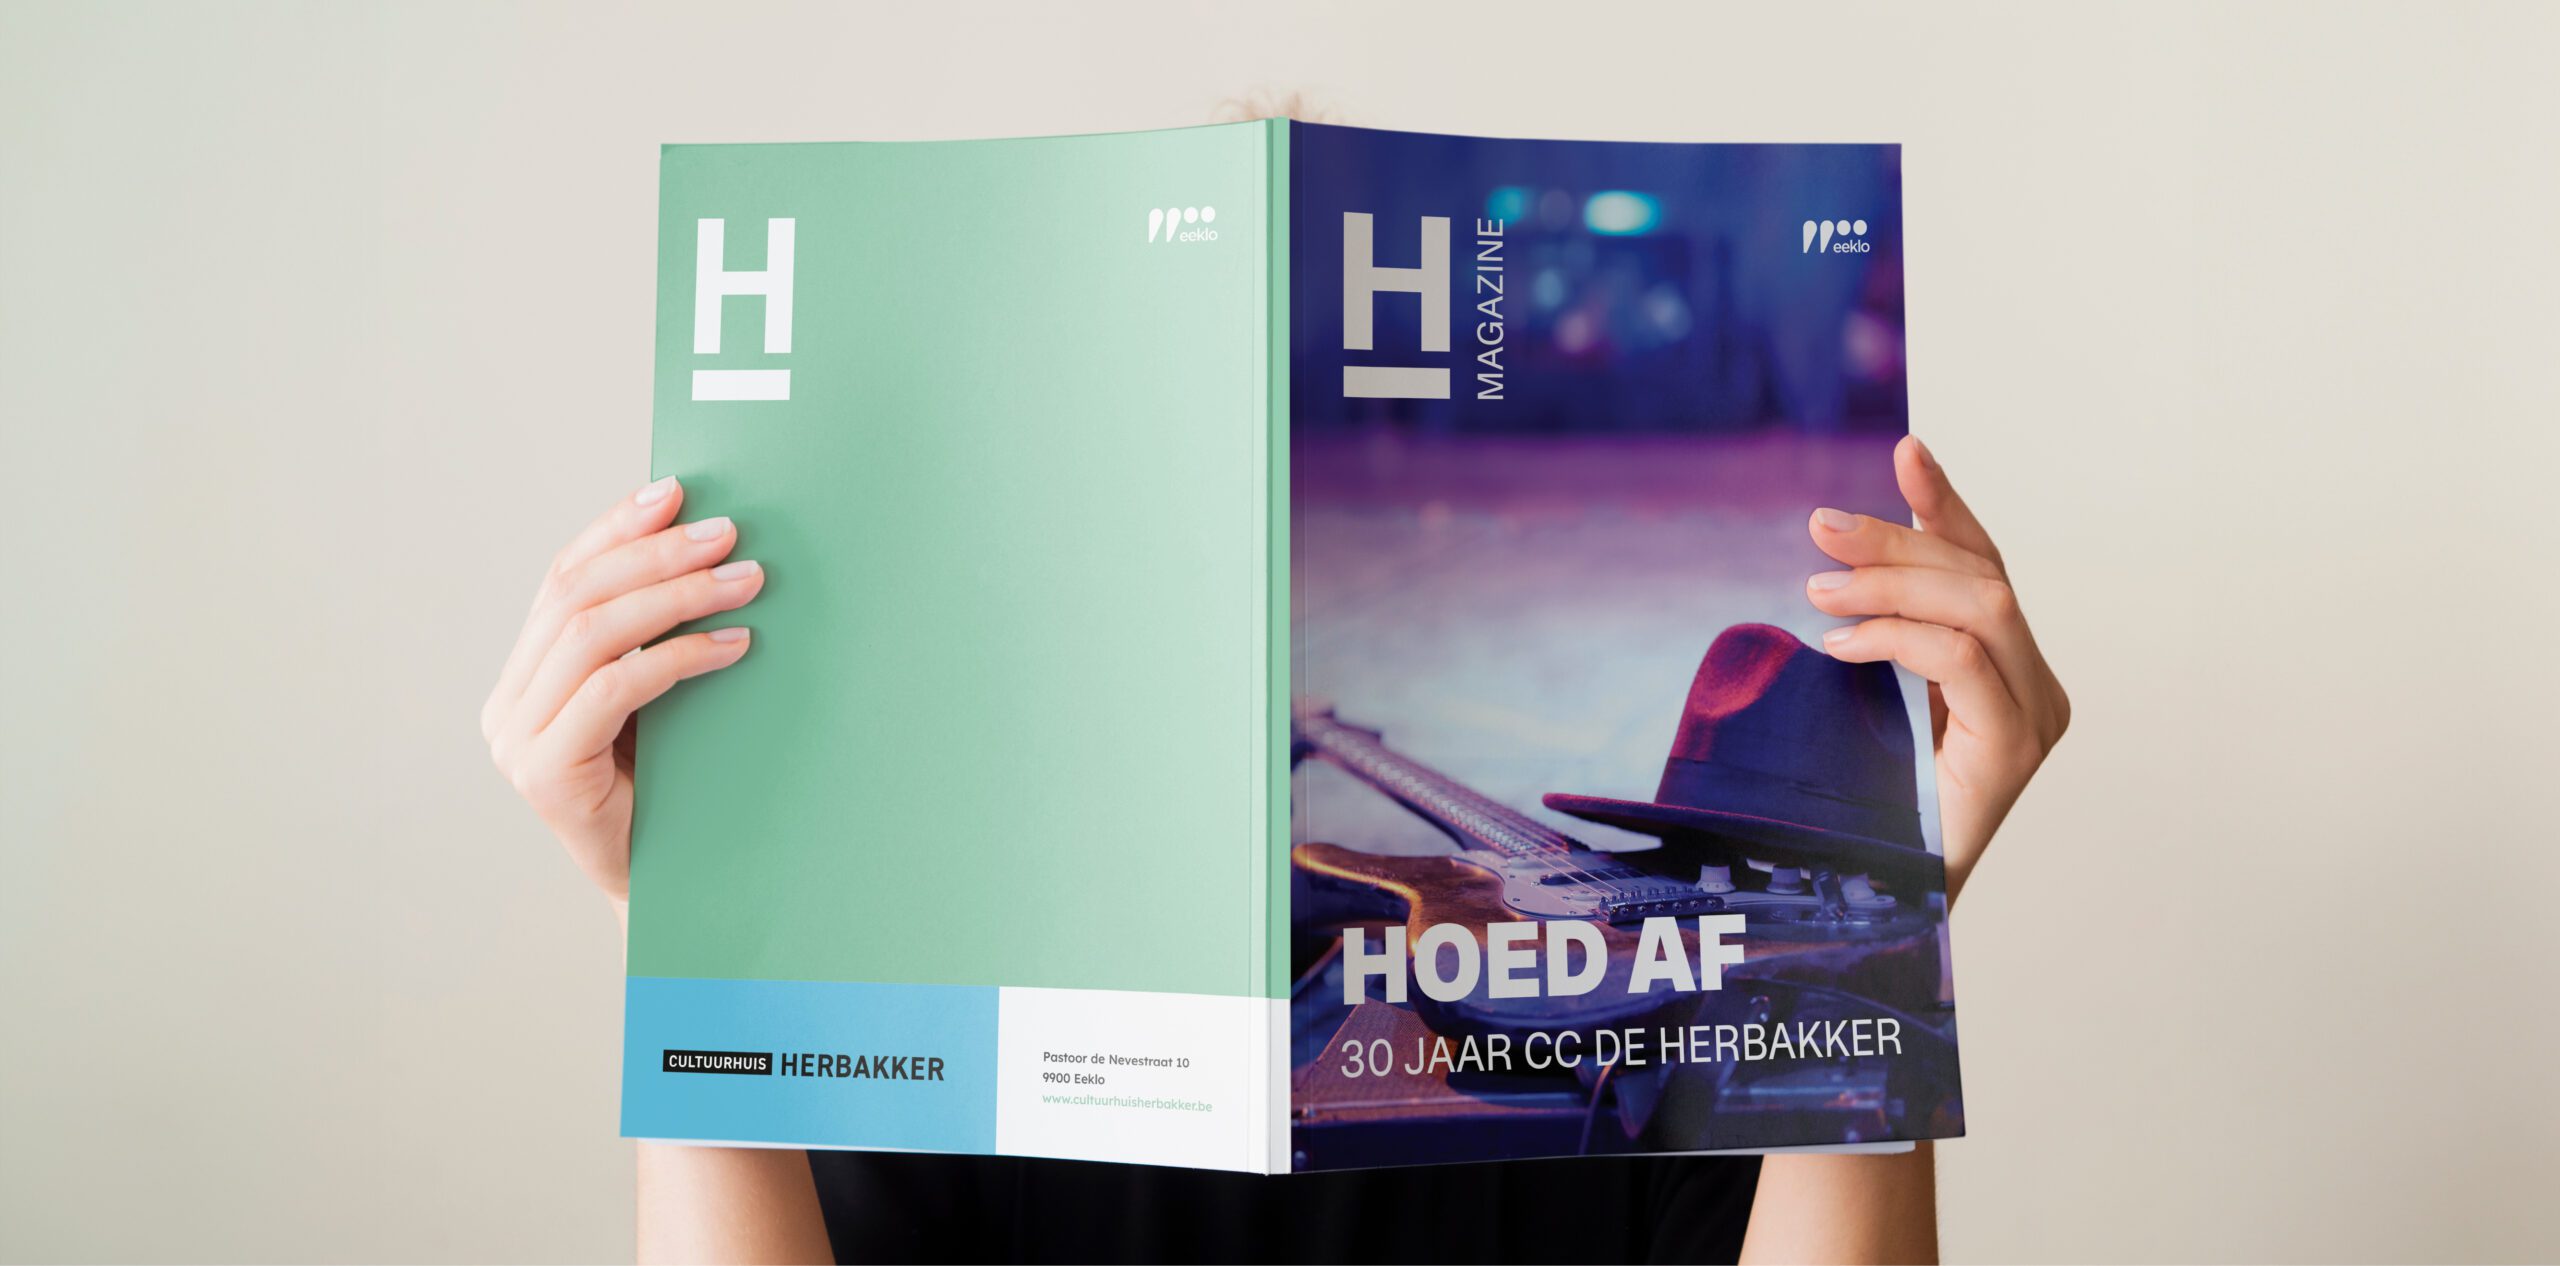 branding Herbakker magazine